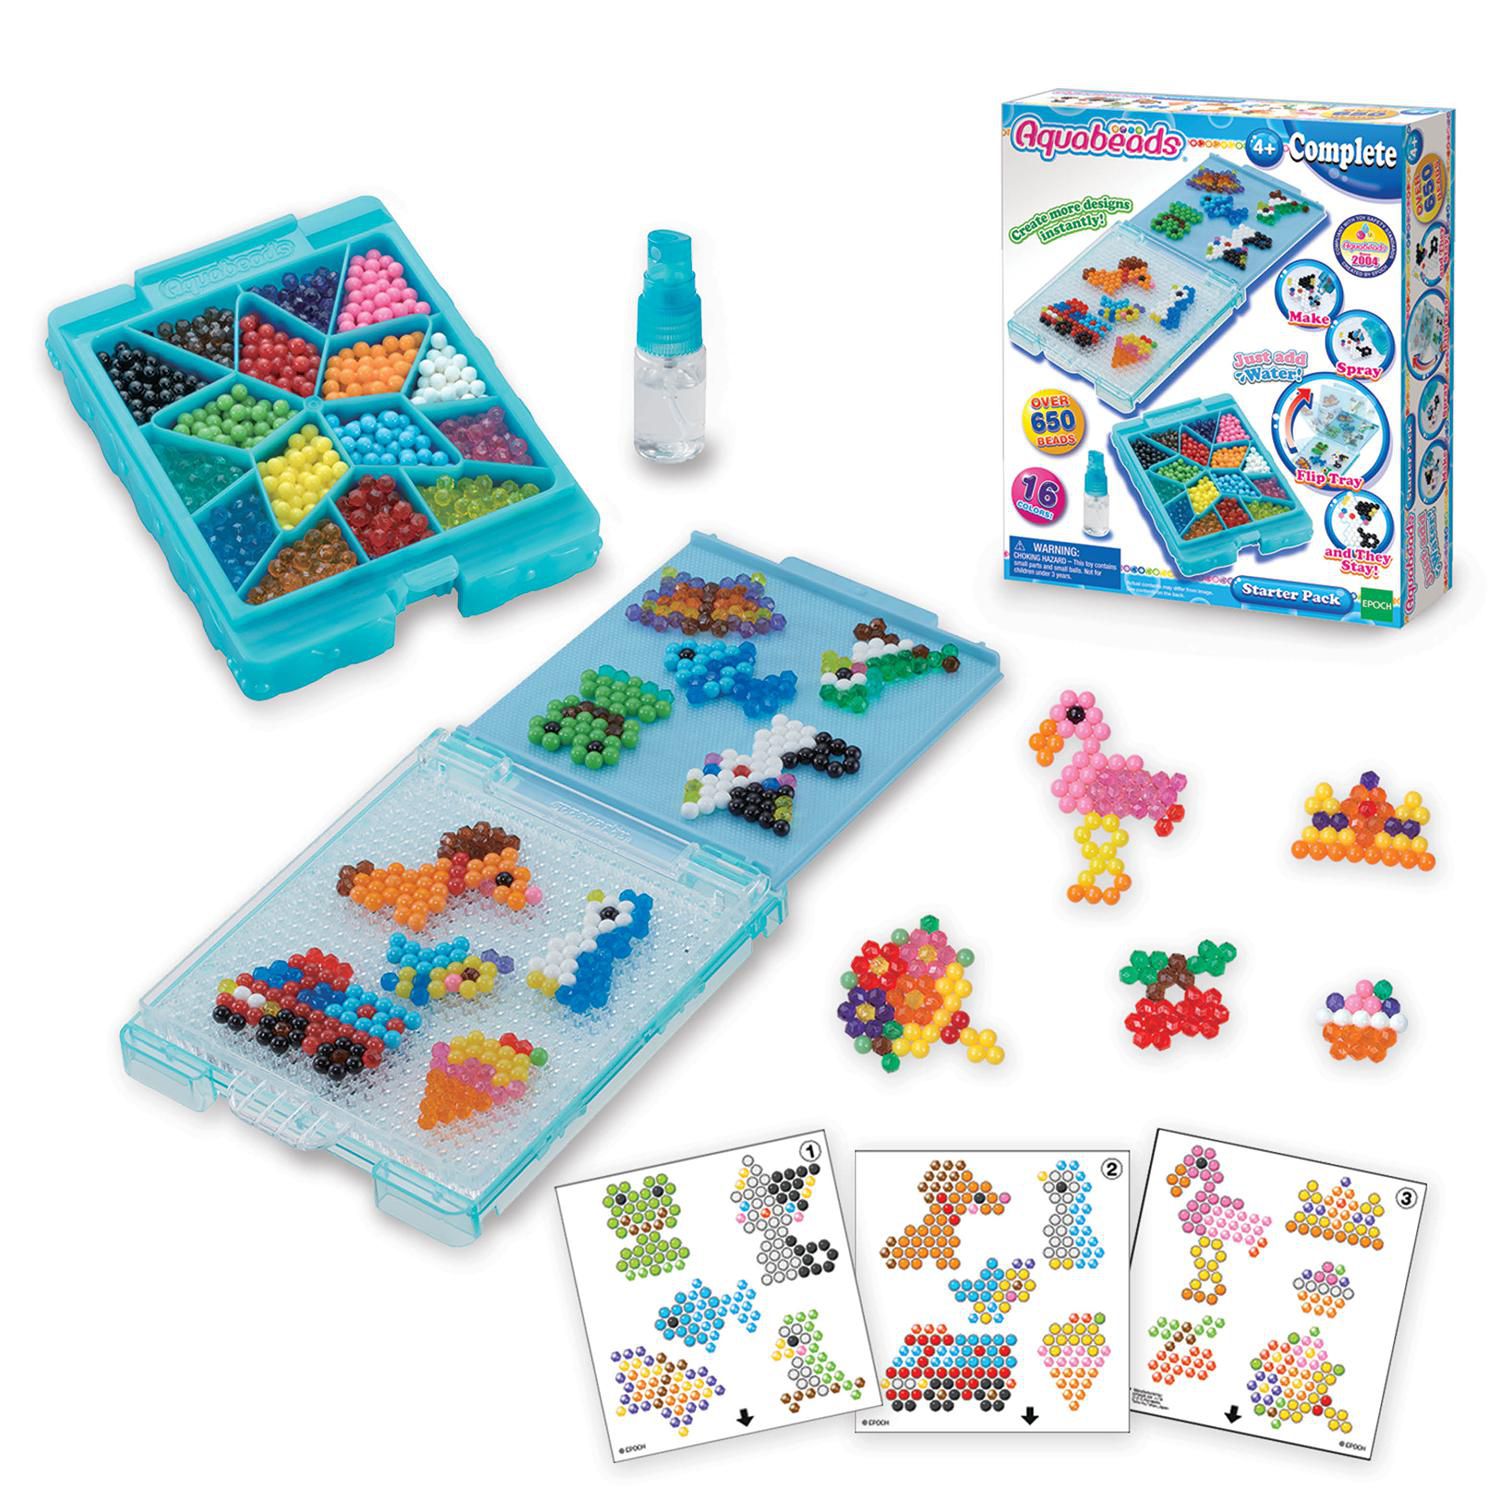 Disney Princess Creation Cube Set - Aquabeads : Target